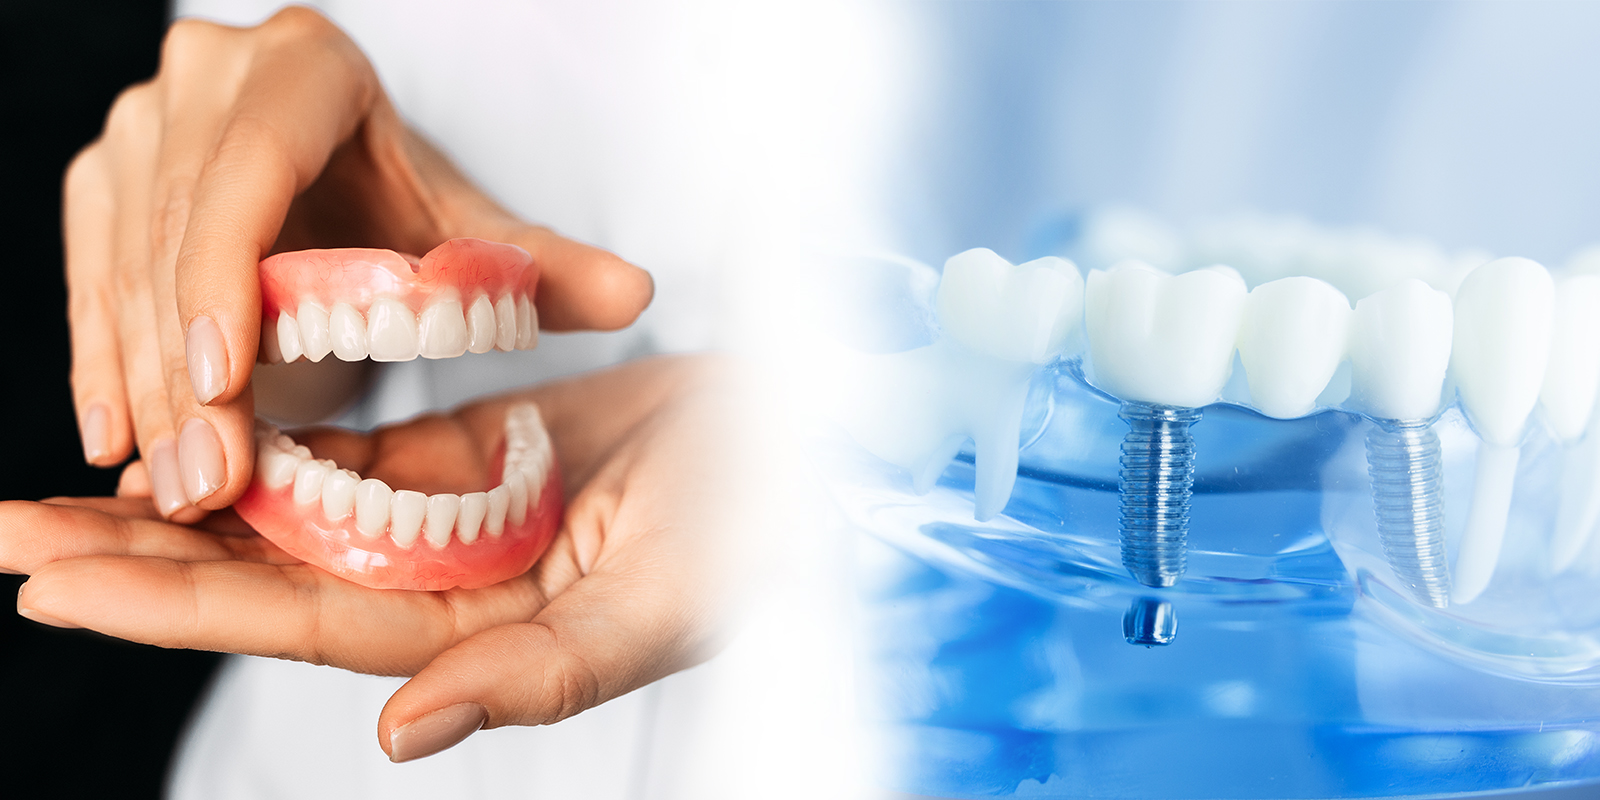 入れ歯とインプラントの違いについて